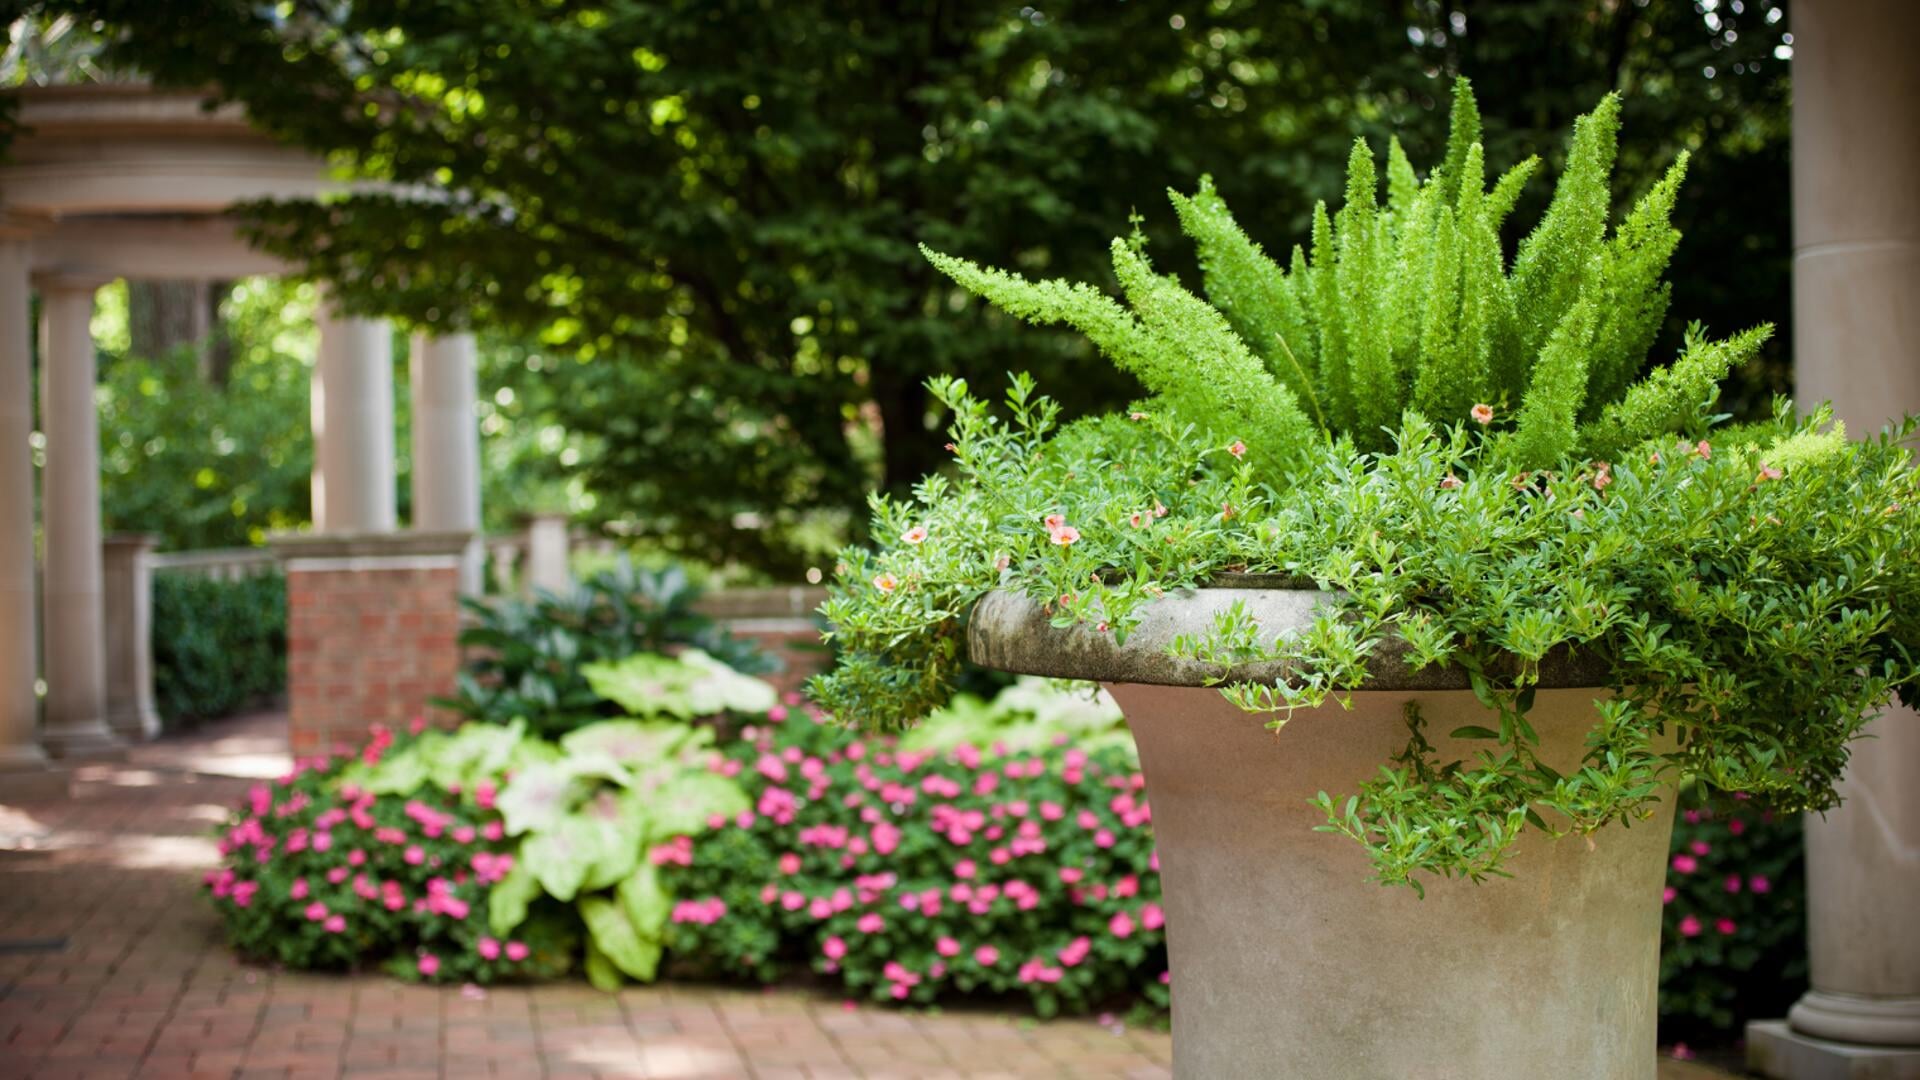 Geef je achtertuin een botanische look met déze tips!